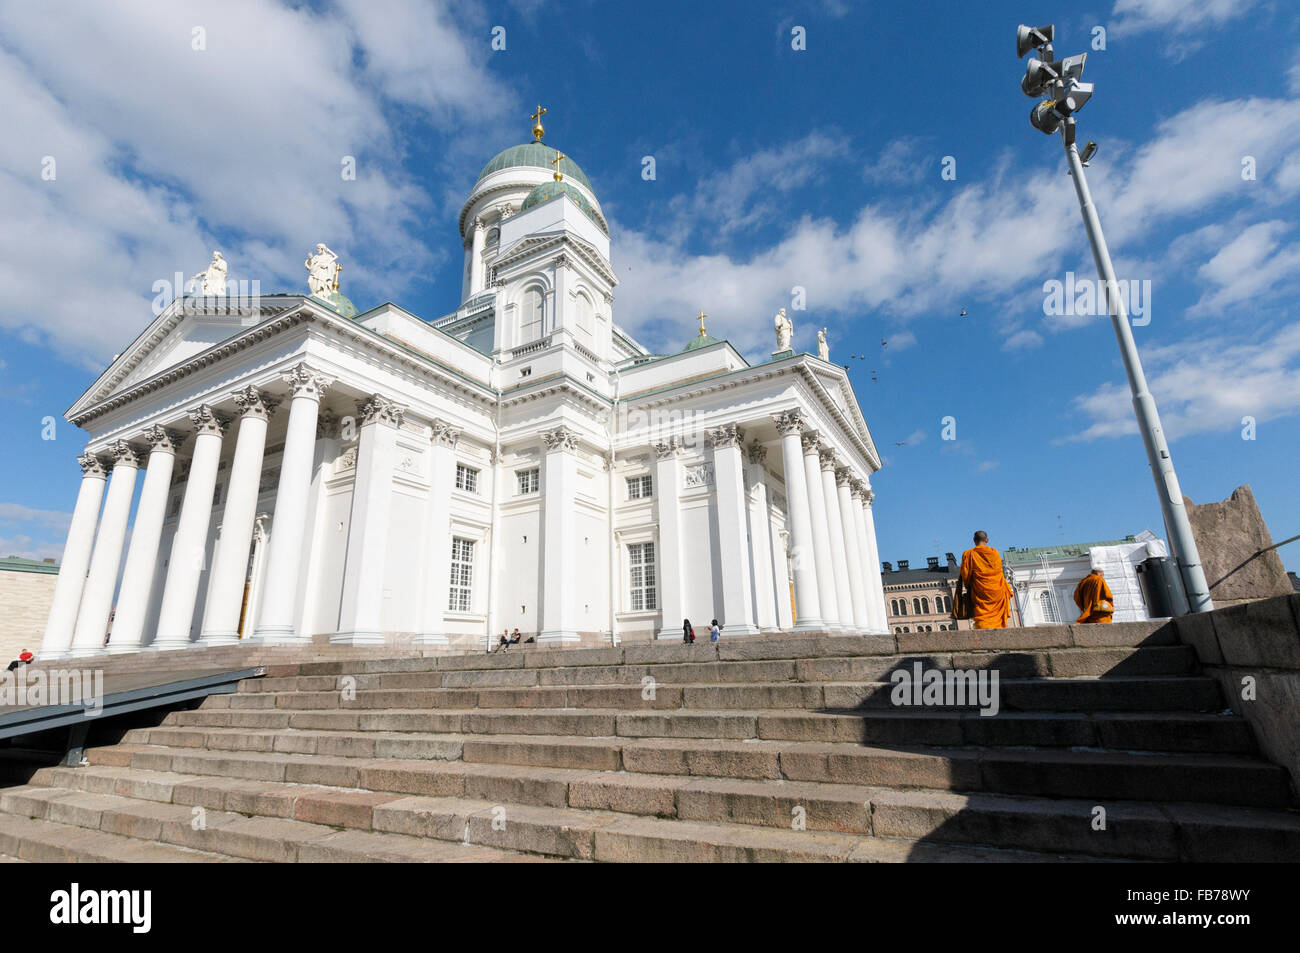 Deux moines bouddhistes visiter la Cathédrale d'Helsinki, la place du Sénat. Kruununhaka, Helsinki, Finlande Banque D'Images